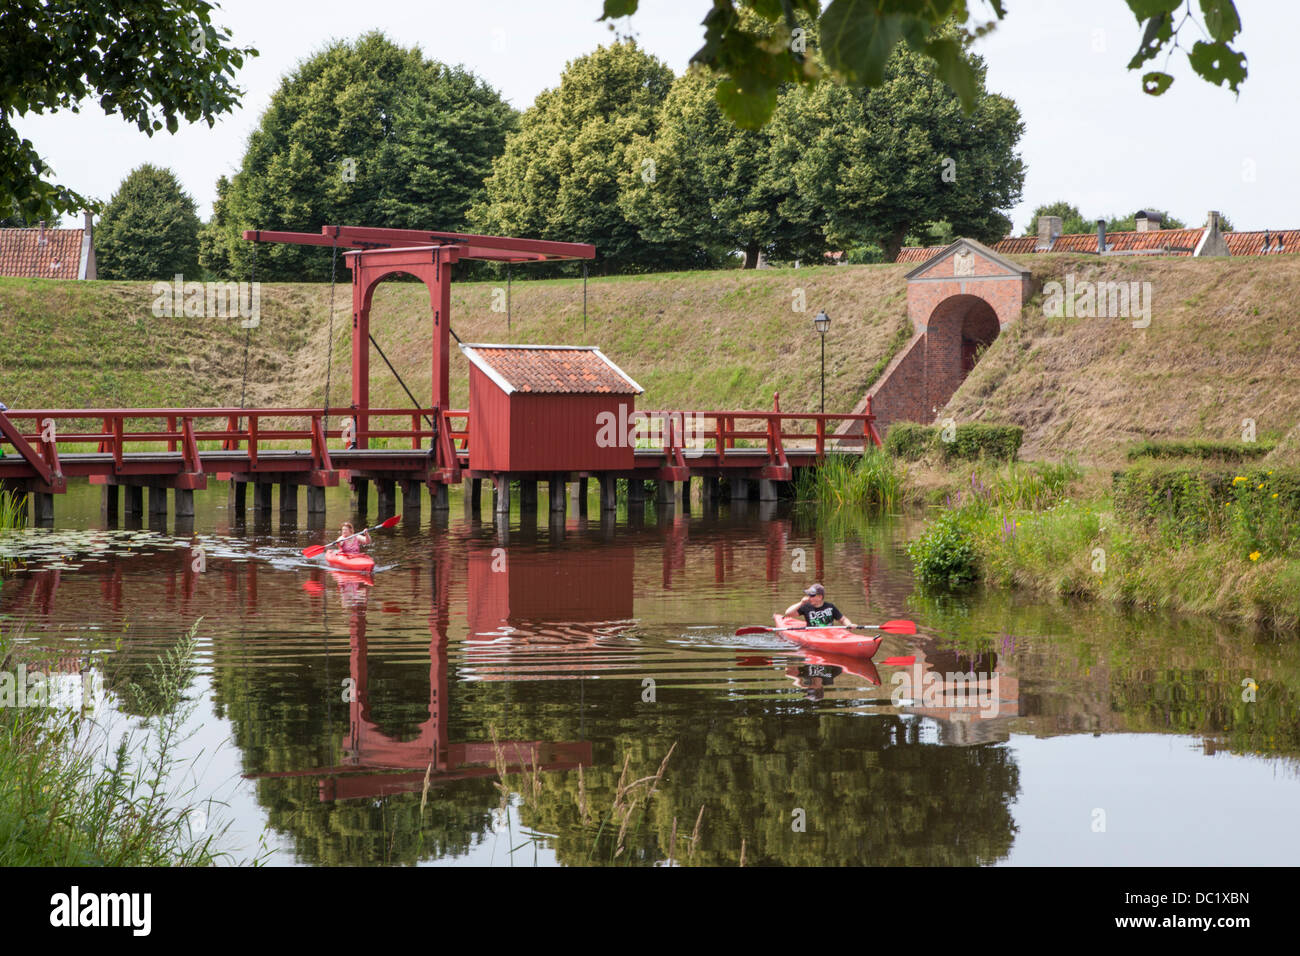 Los turistas en kayaks en kayak en el canal alrededor de la aldea de la fortaleza de Bourtange en los Países Bajos, pasando un puente levadizo Foto de stock